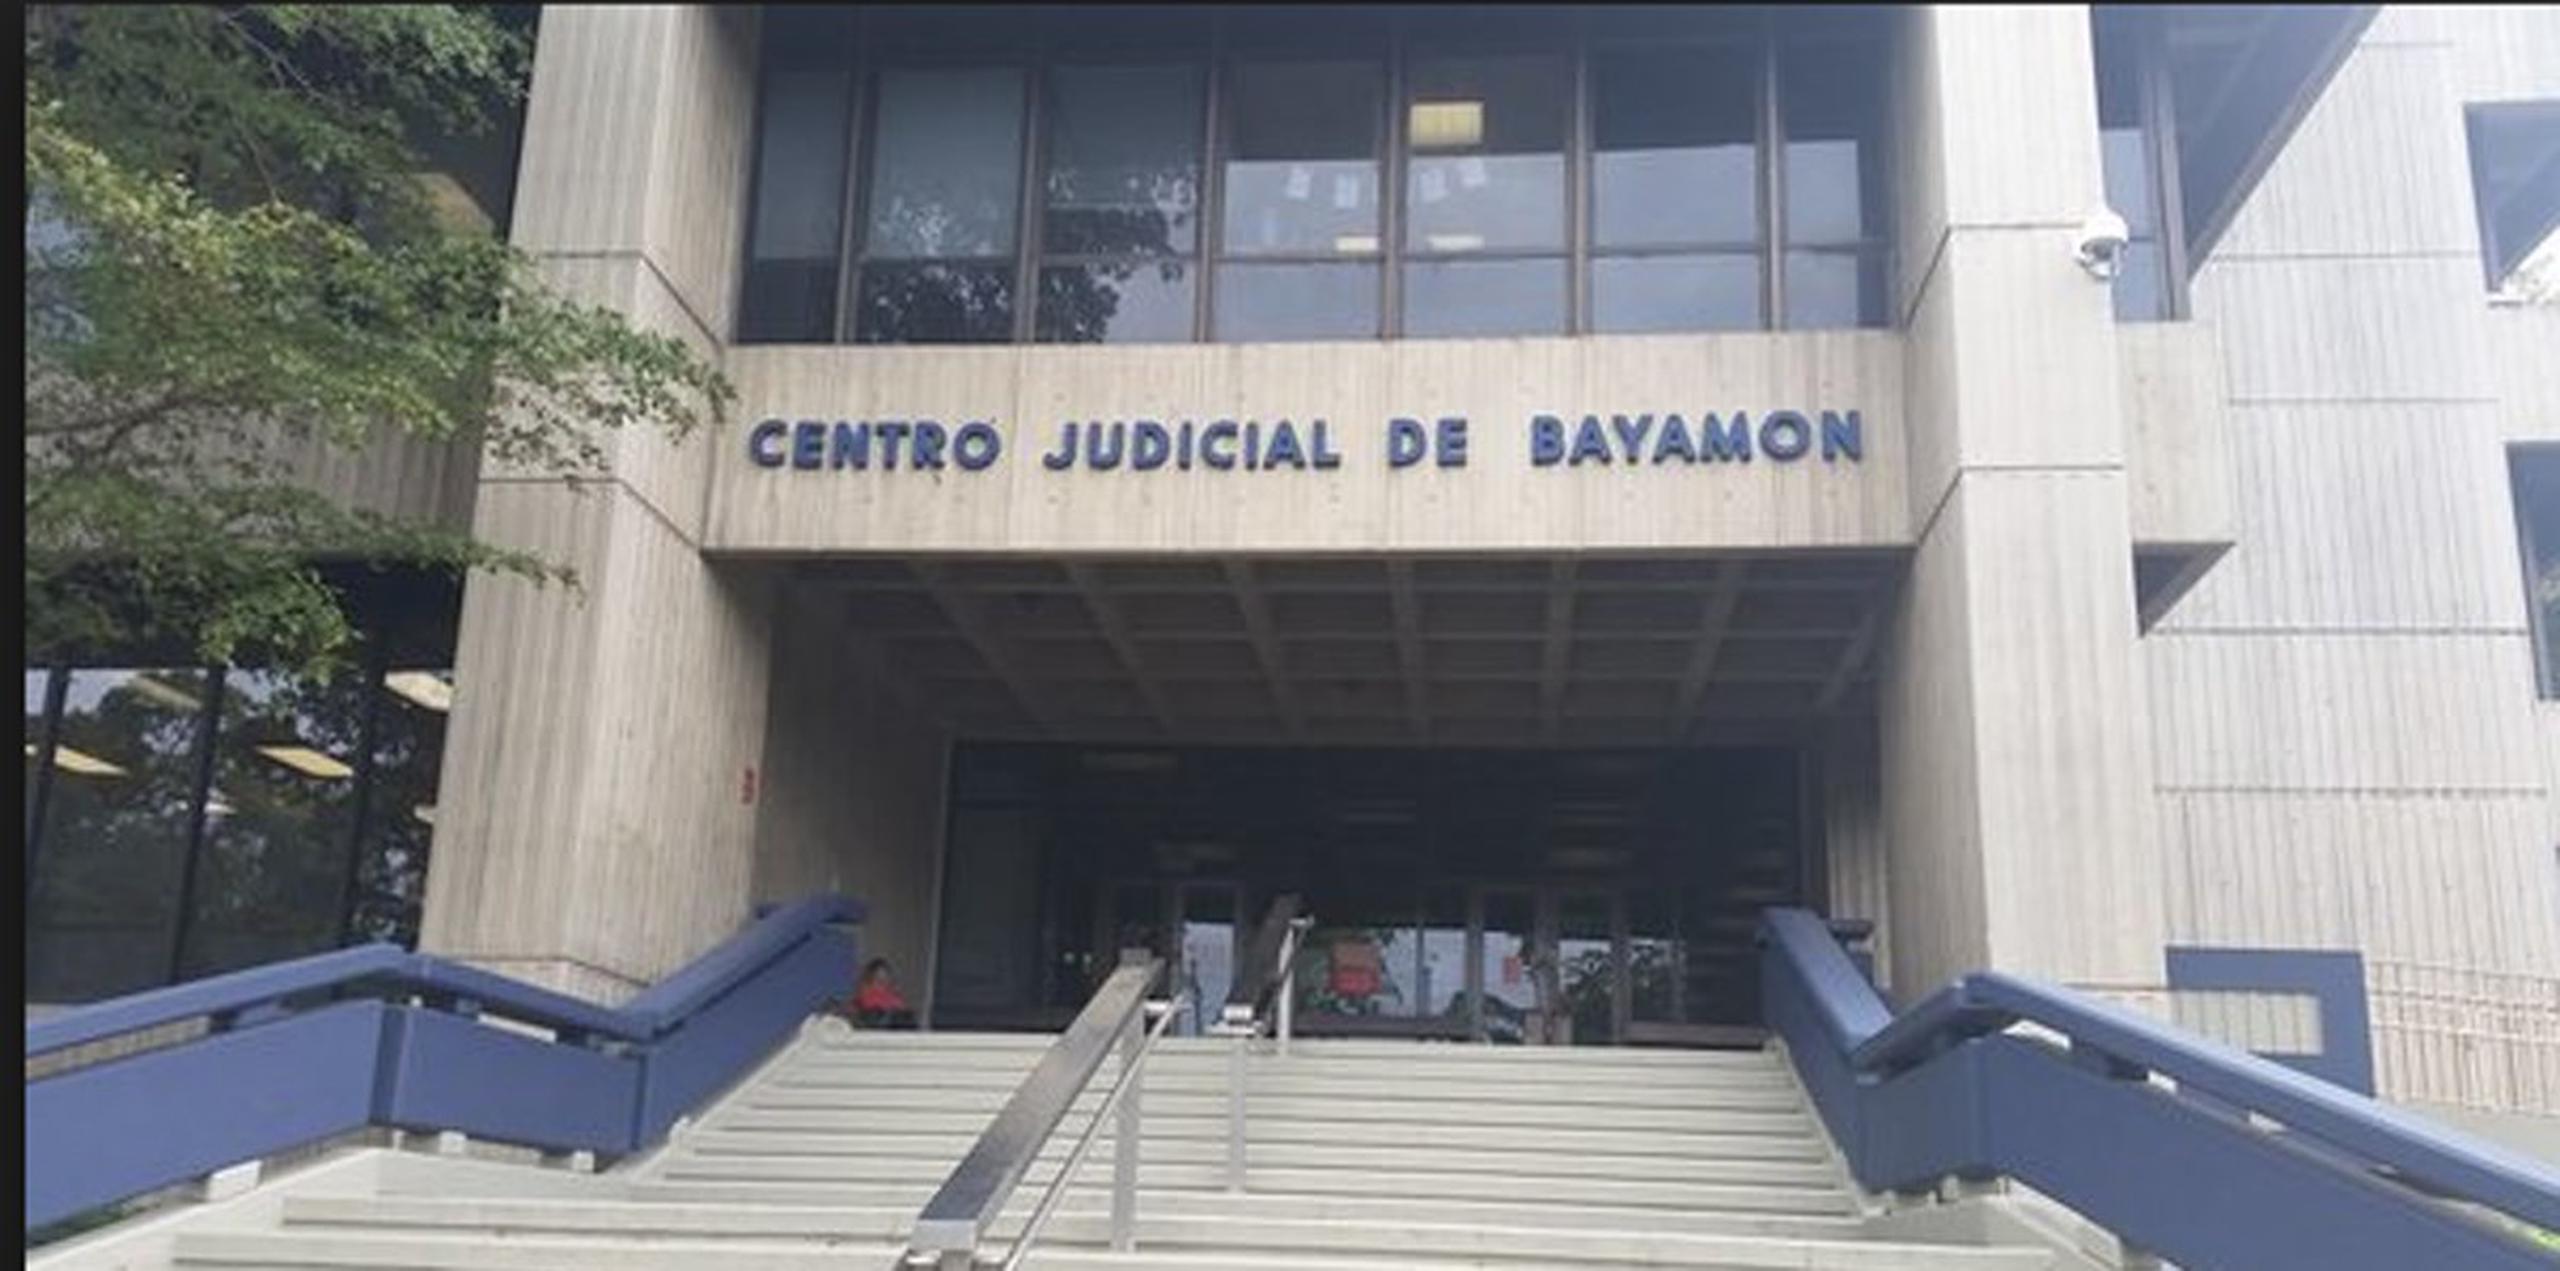 Los trabajos en las salas de investigaciones de Bayamón y San Juan se reanudarán en sus horarios regulares el miércoles, 5 de julio.
(Archivo GFR Media)